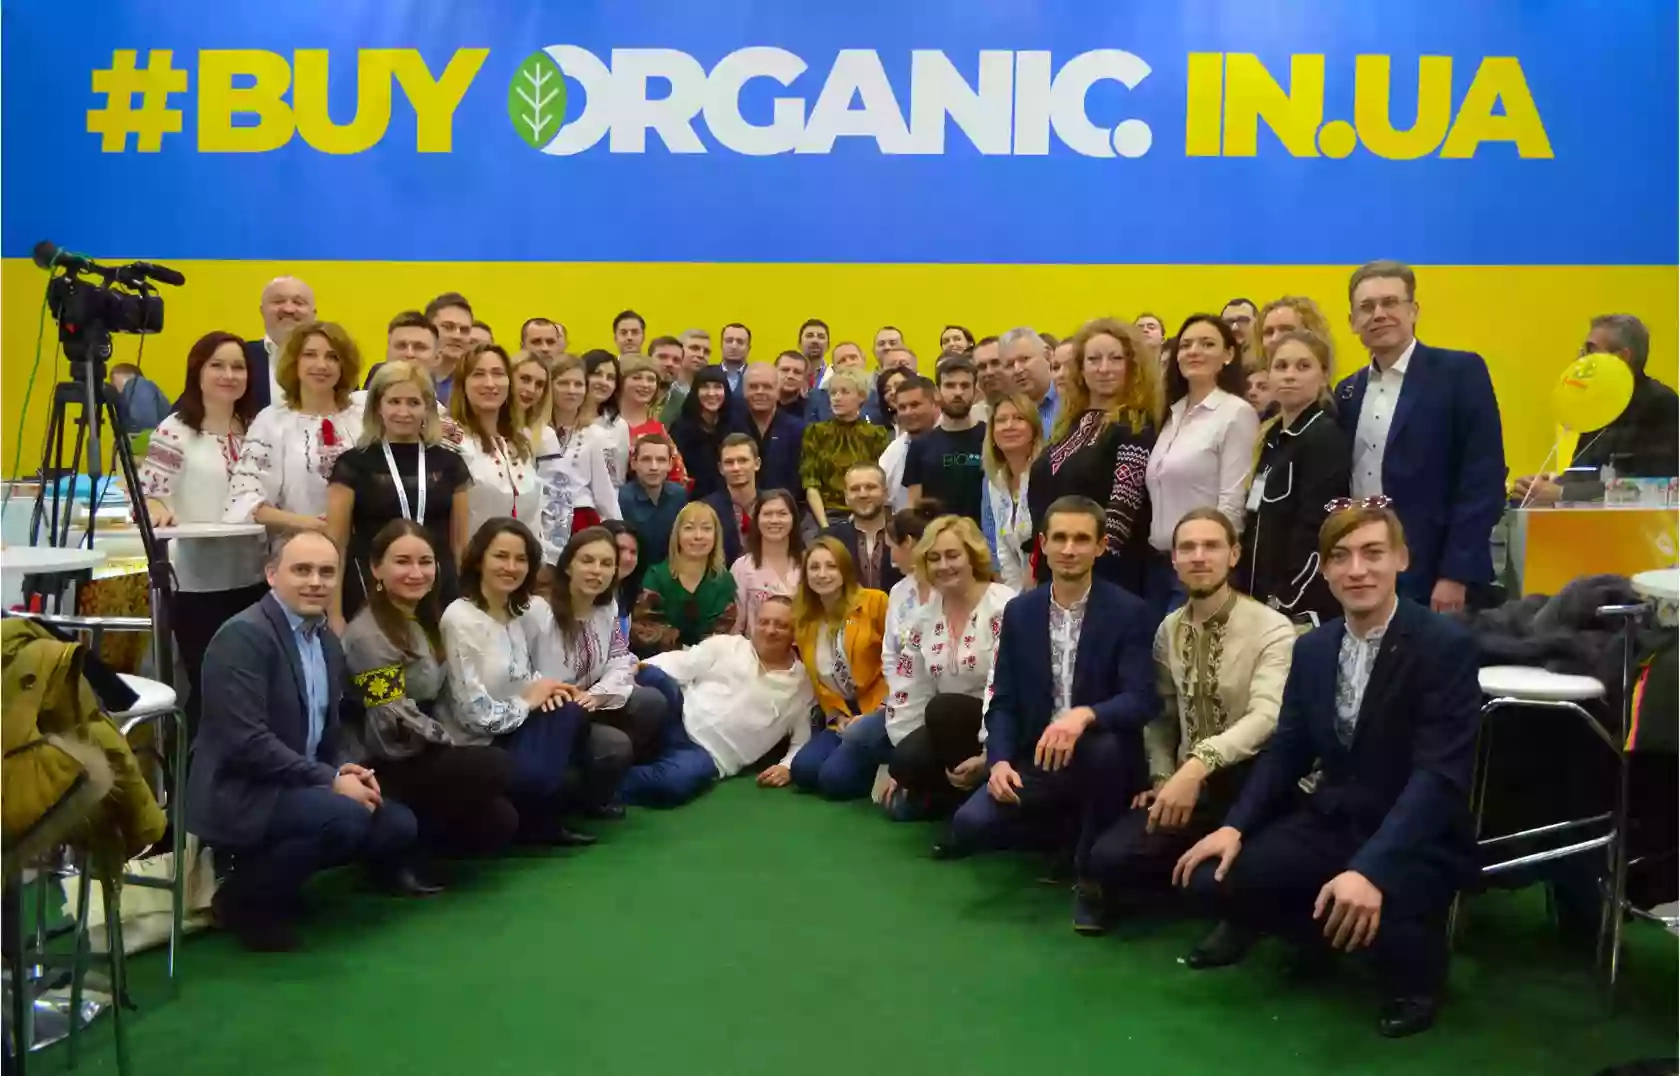 Купити органік в Україні / Buy Organic in Ukraine